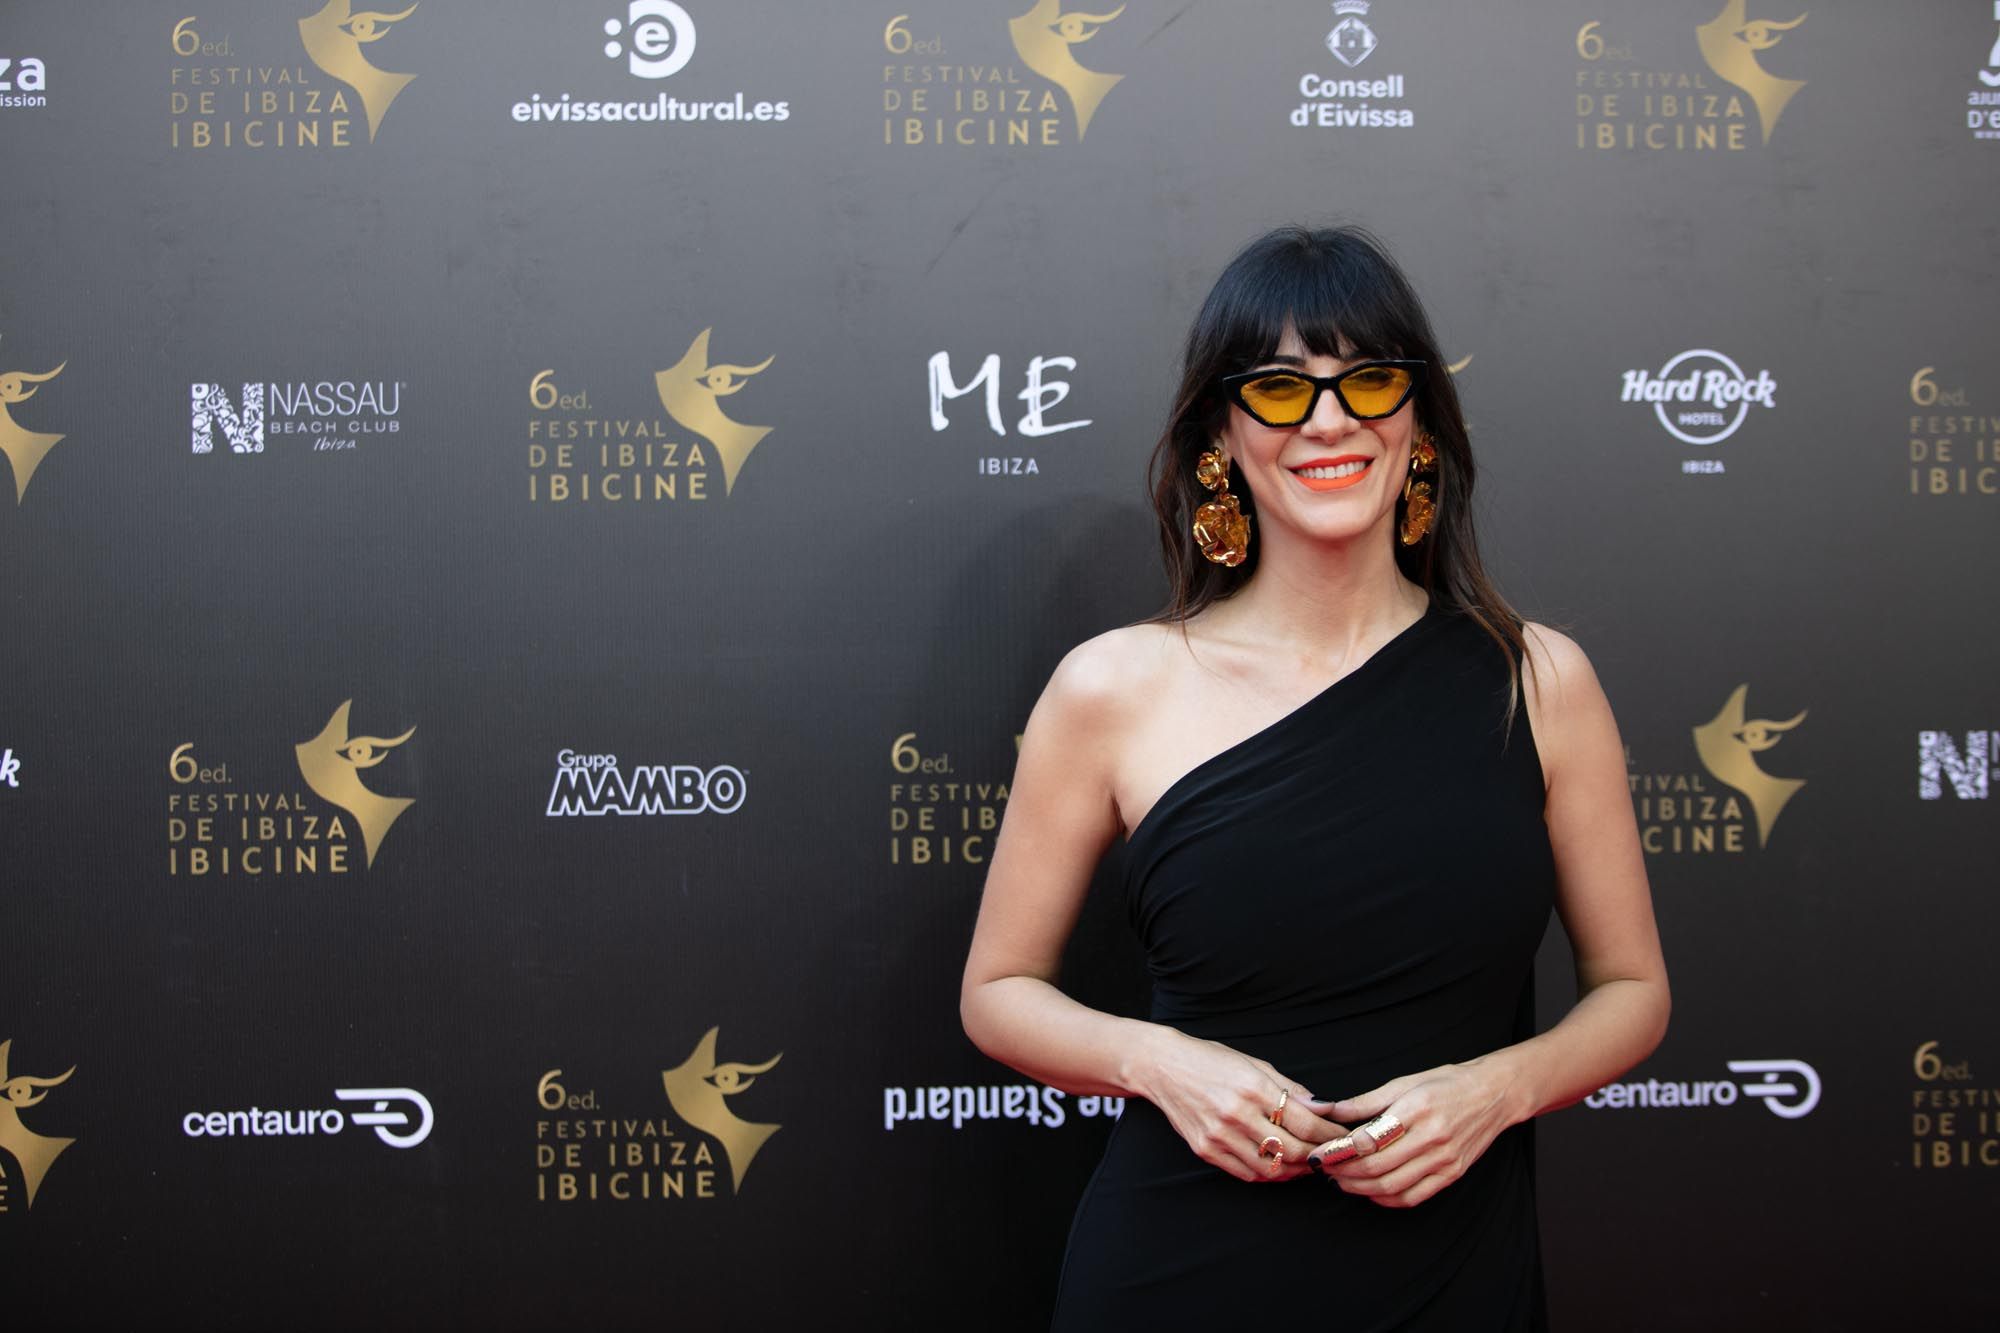 Premios Astarté: Ibiza, epicentro del audiovisual un año más